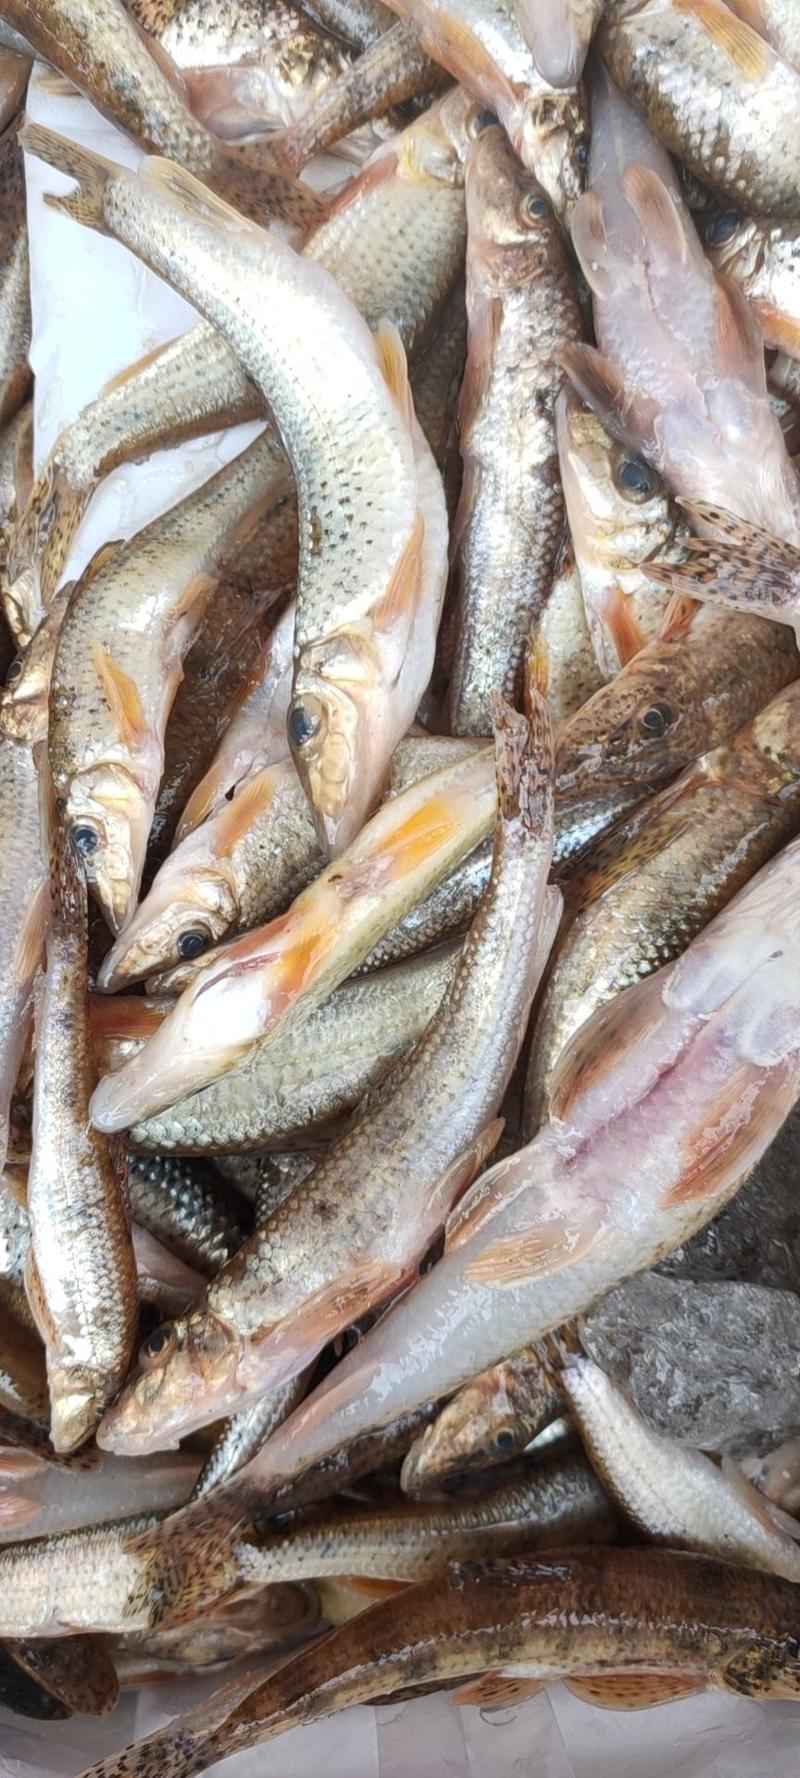 川丁鱼，棍子鱼，沙古鲁鱼手杀，鲜货冻货都有货，保证质量